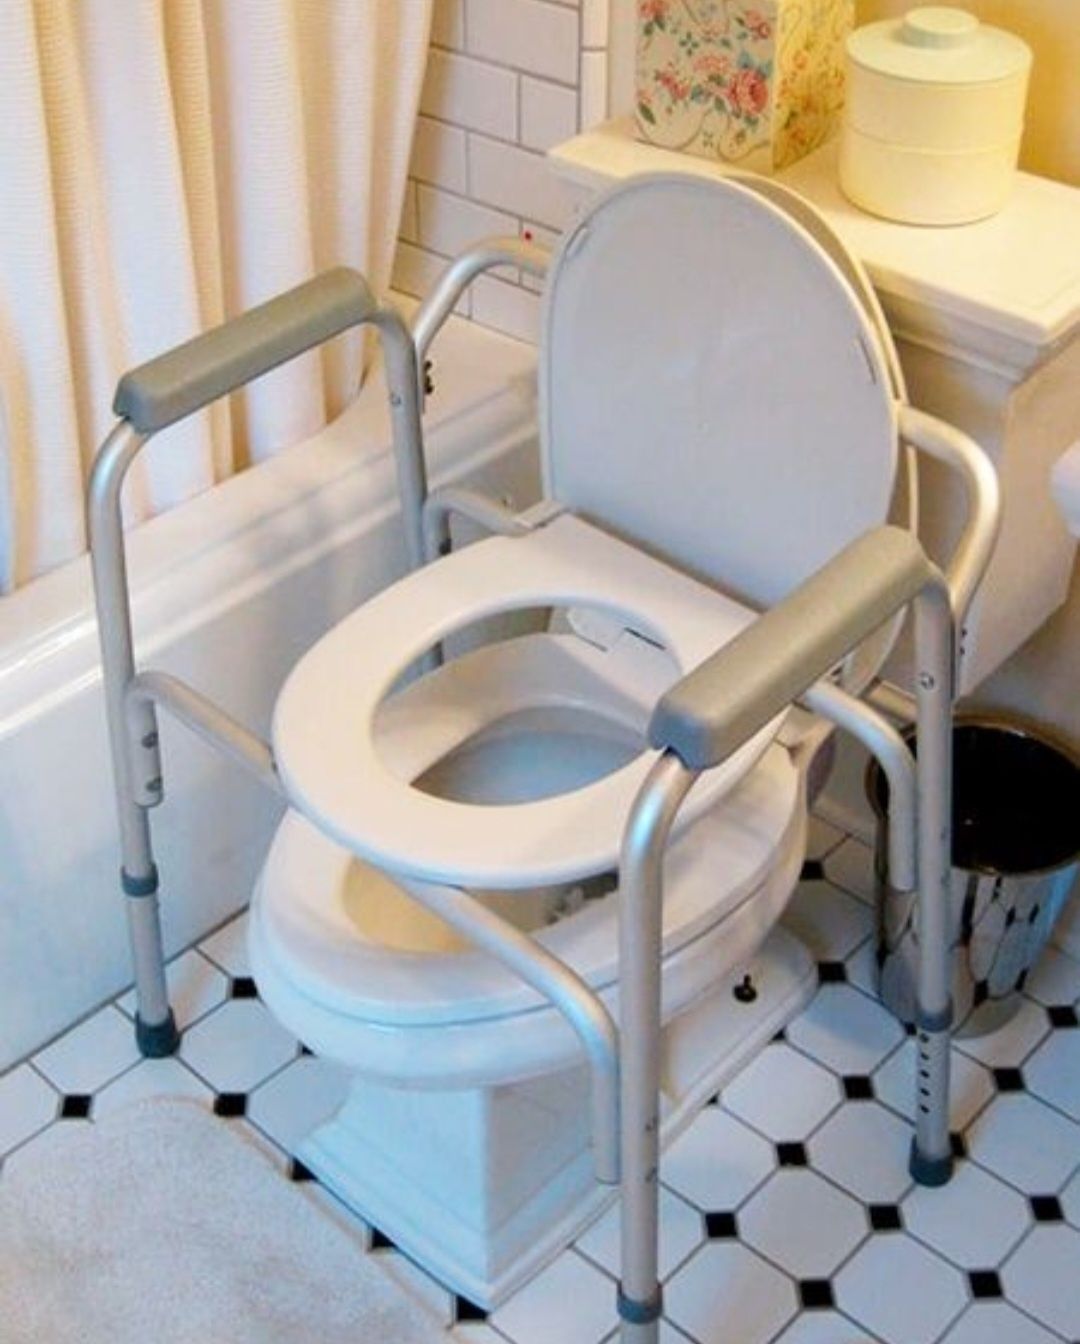 Туалет 150 и насадка на унитаз биотуалет из Европы и горшок санитарный